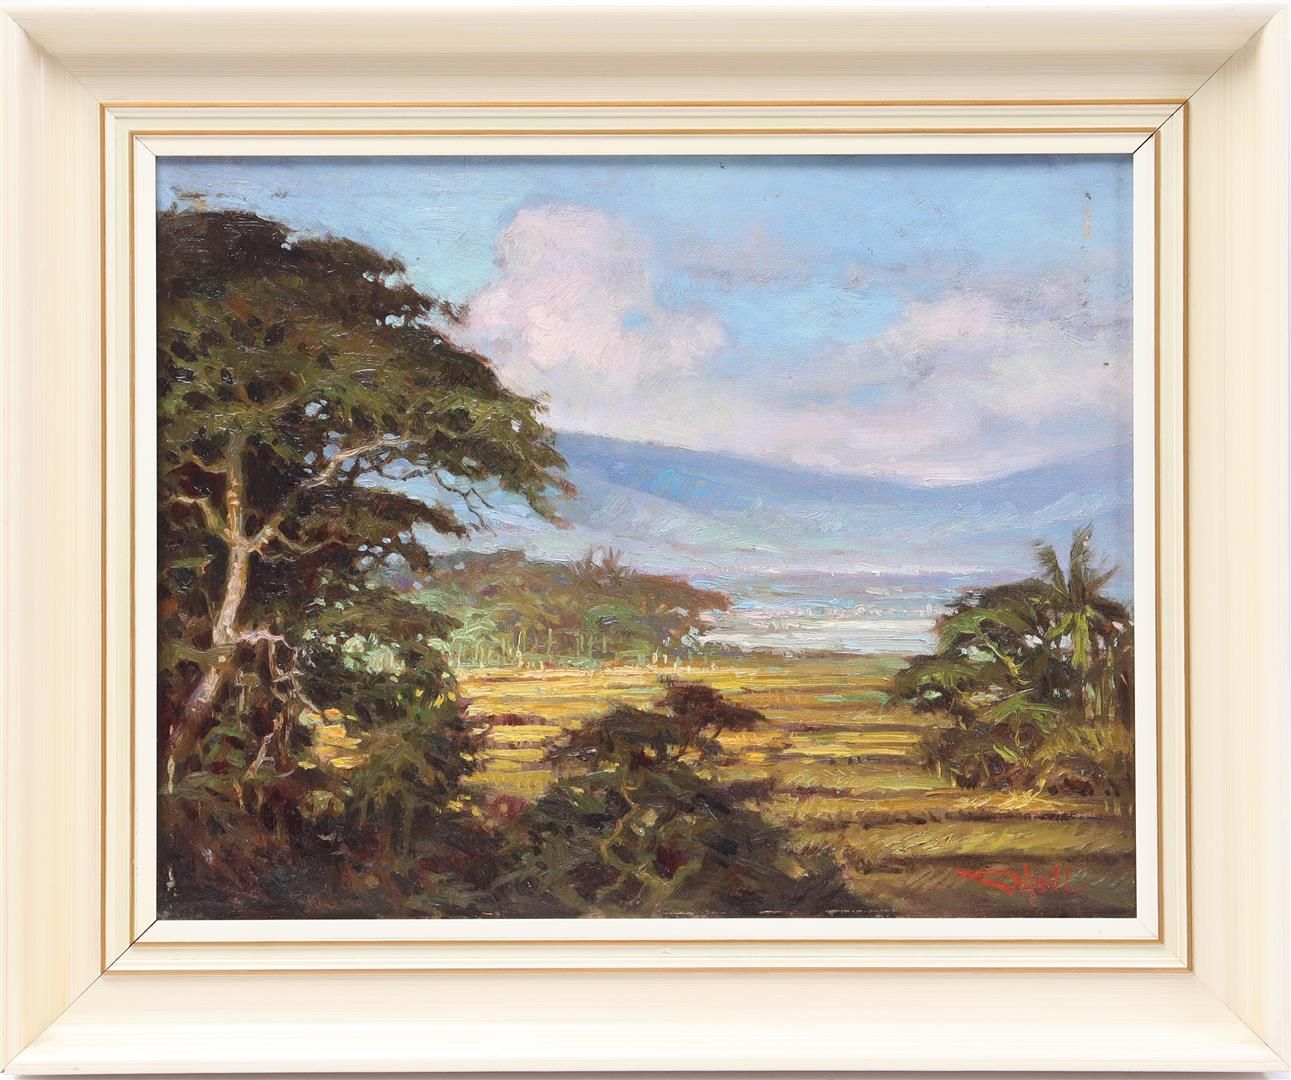 R Hadi R-哈迪 (1958-)

爪哇中部三宝垄的安巴拉瓦景观，帆布40x50厘米